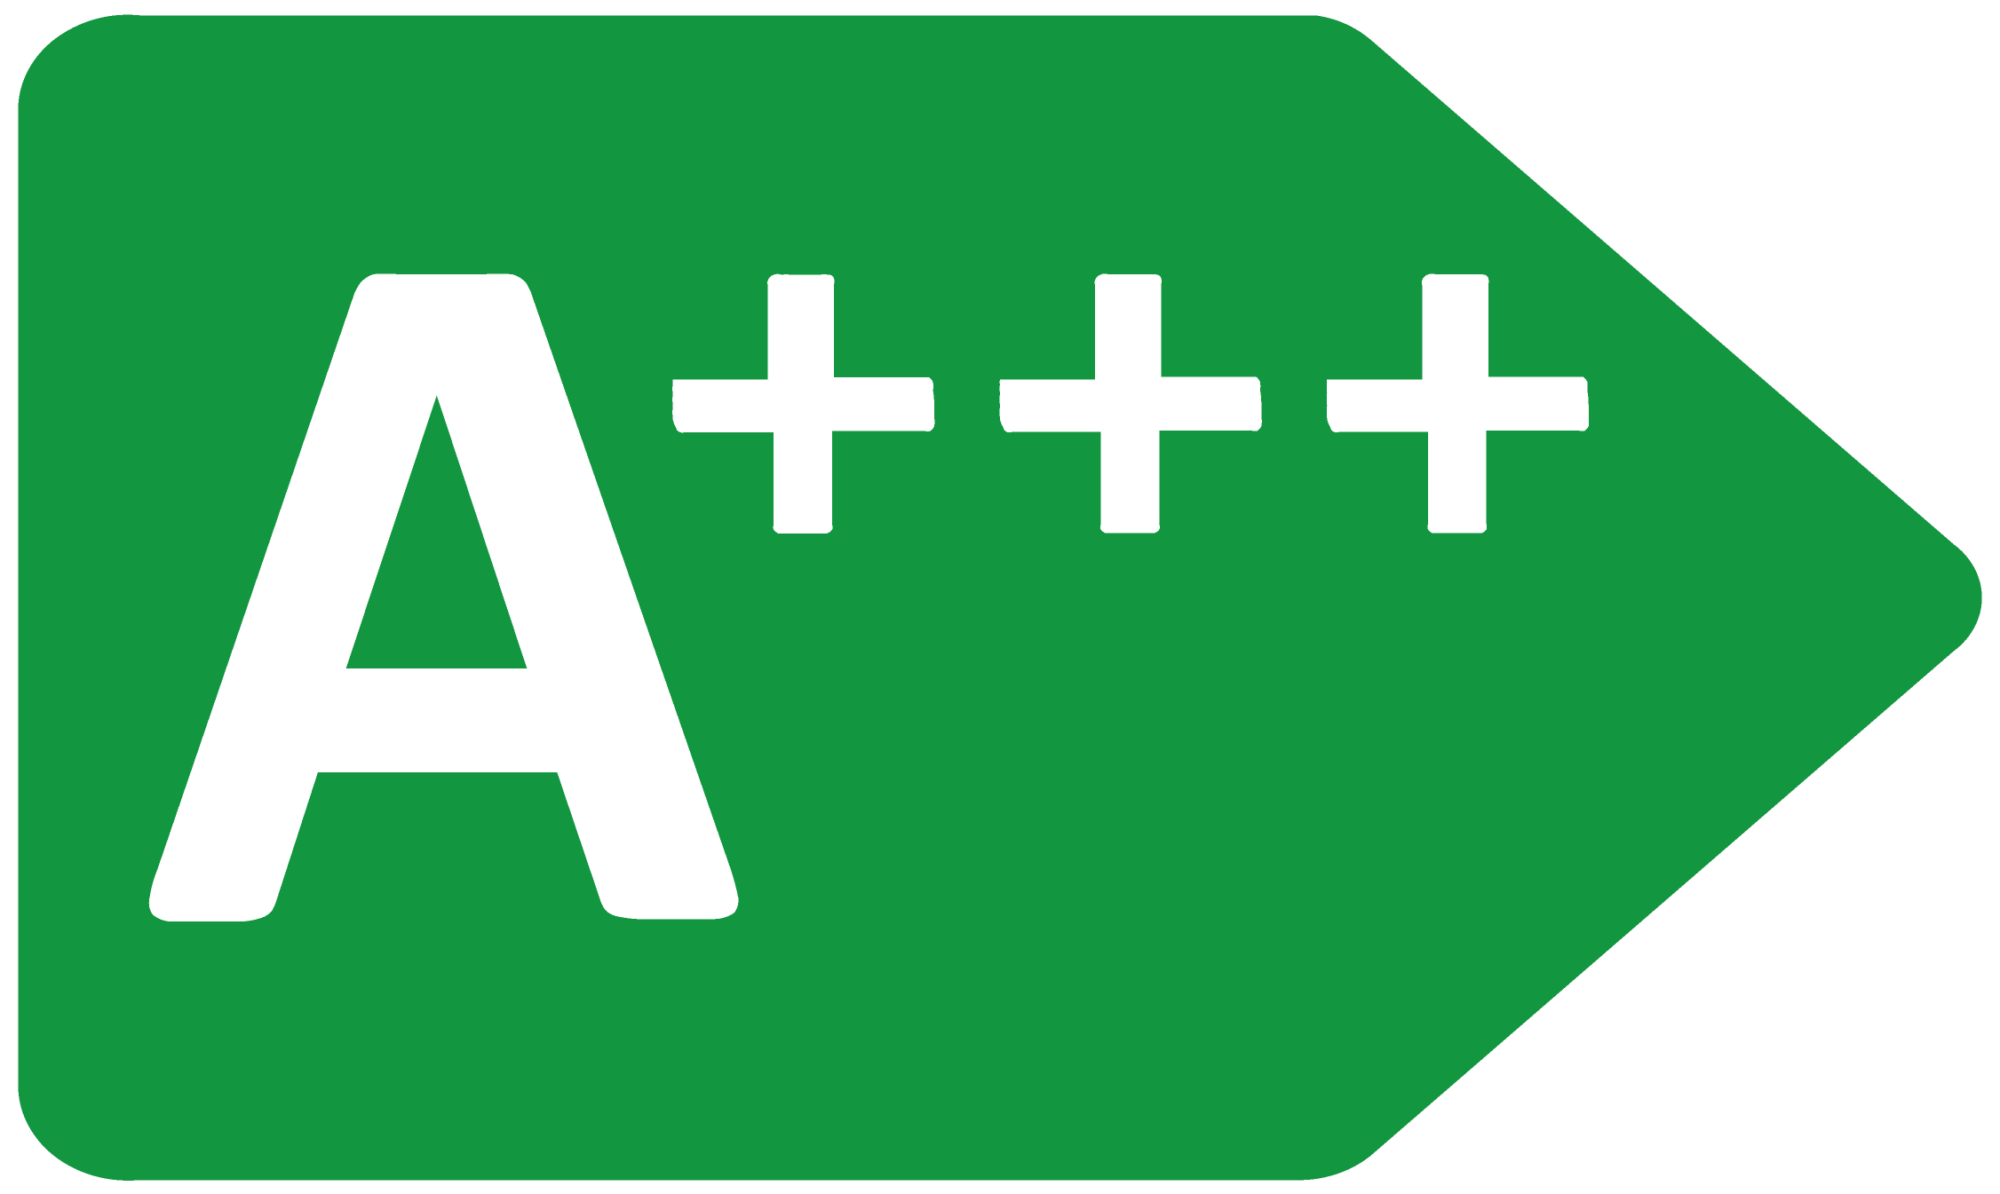 A+++ Energi symbol